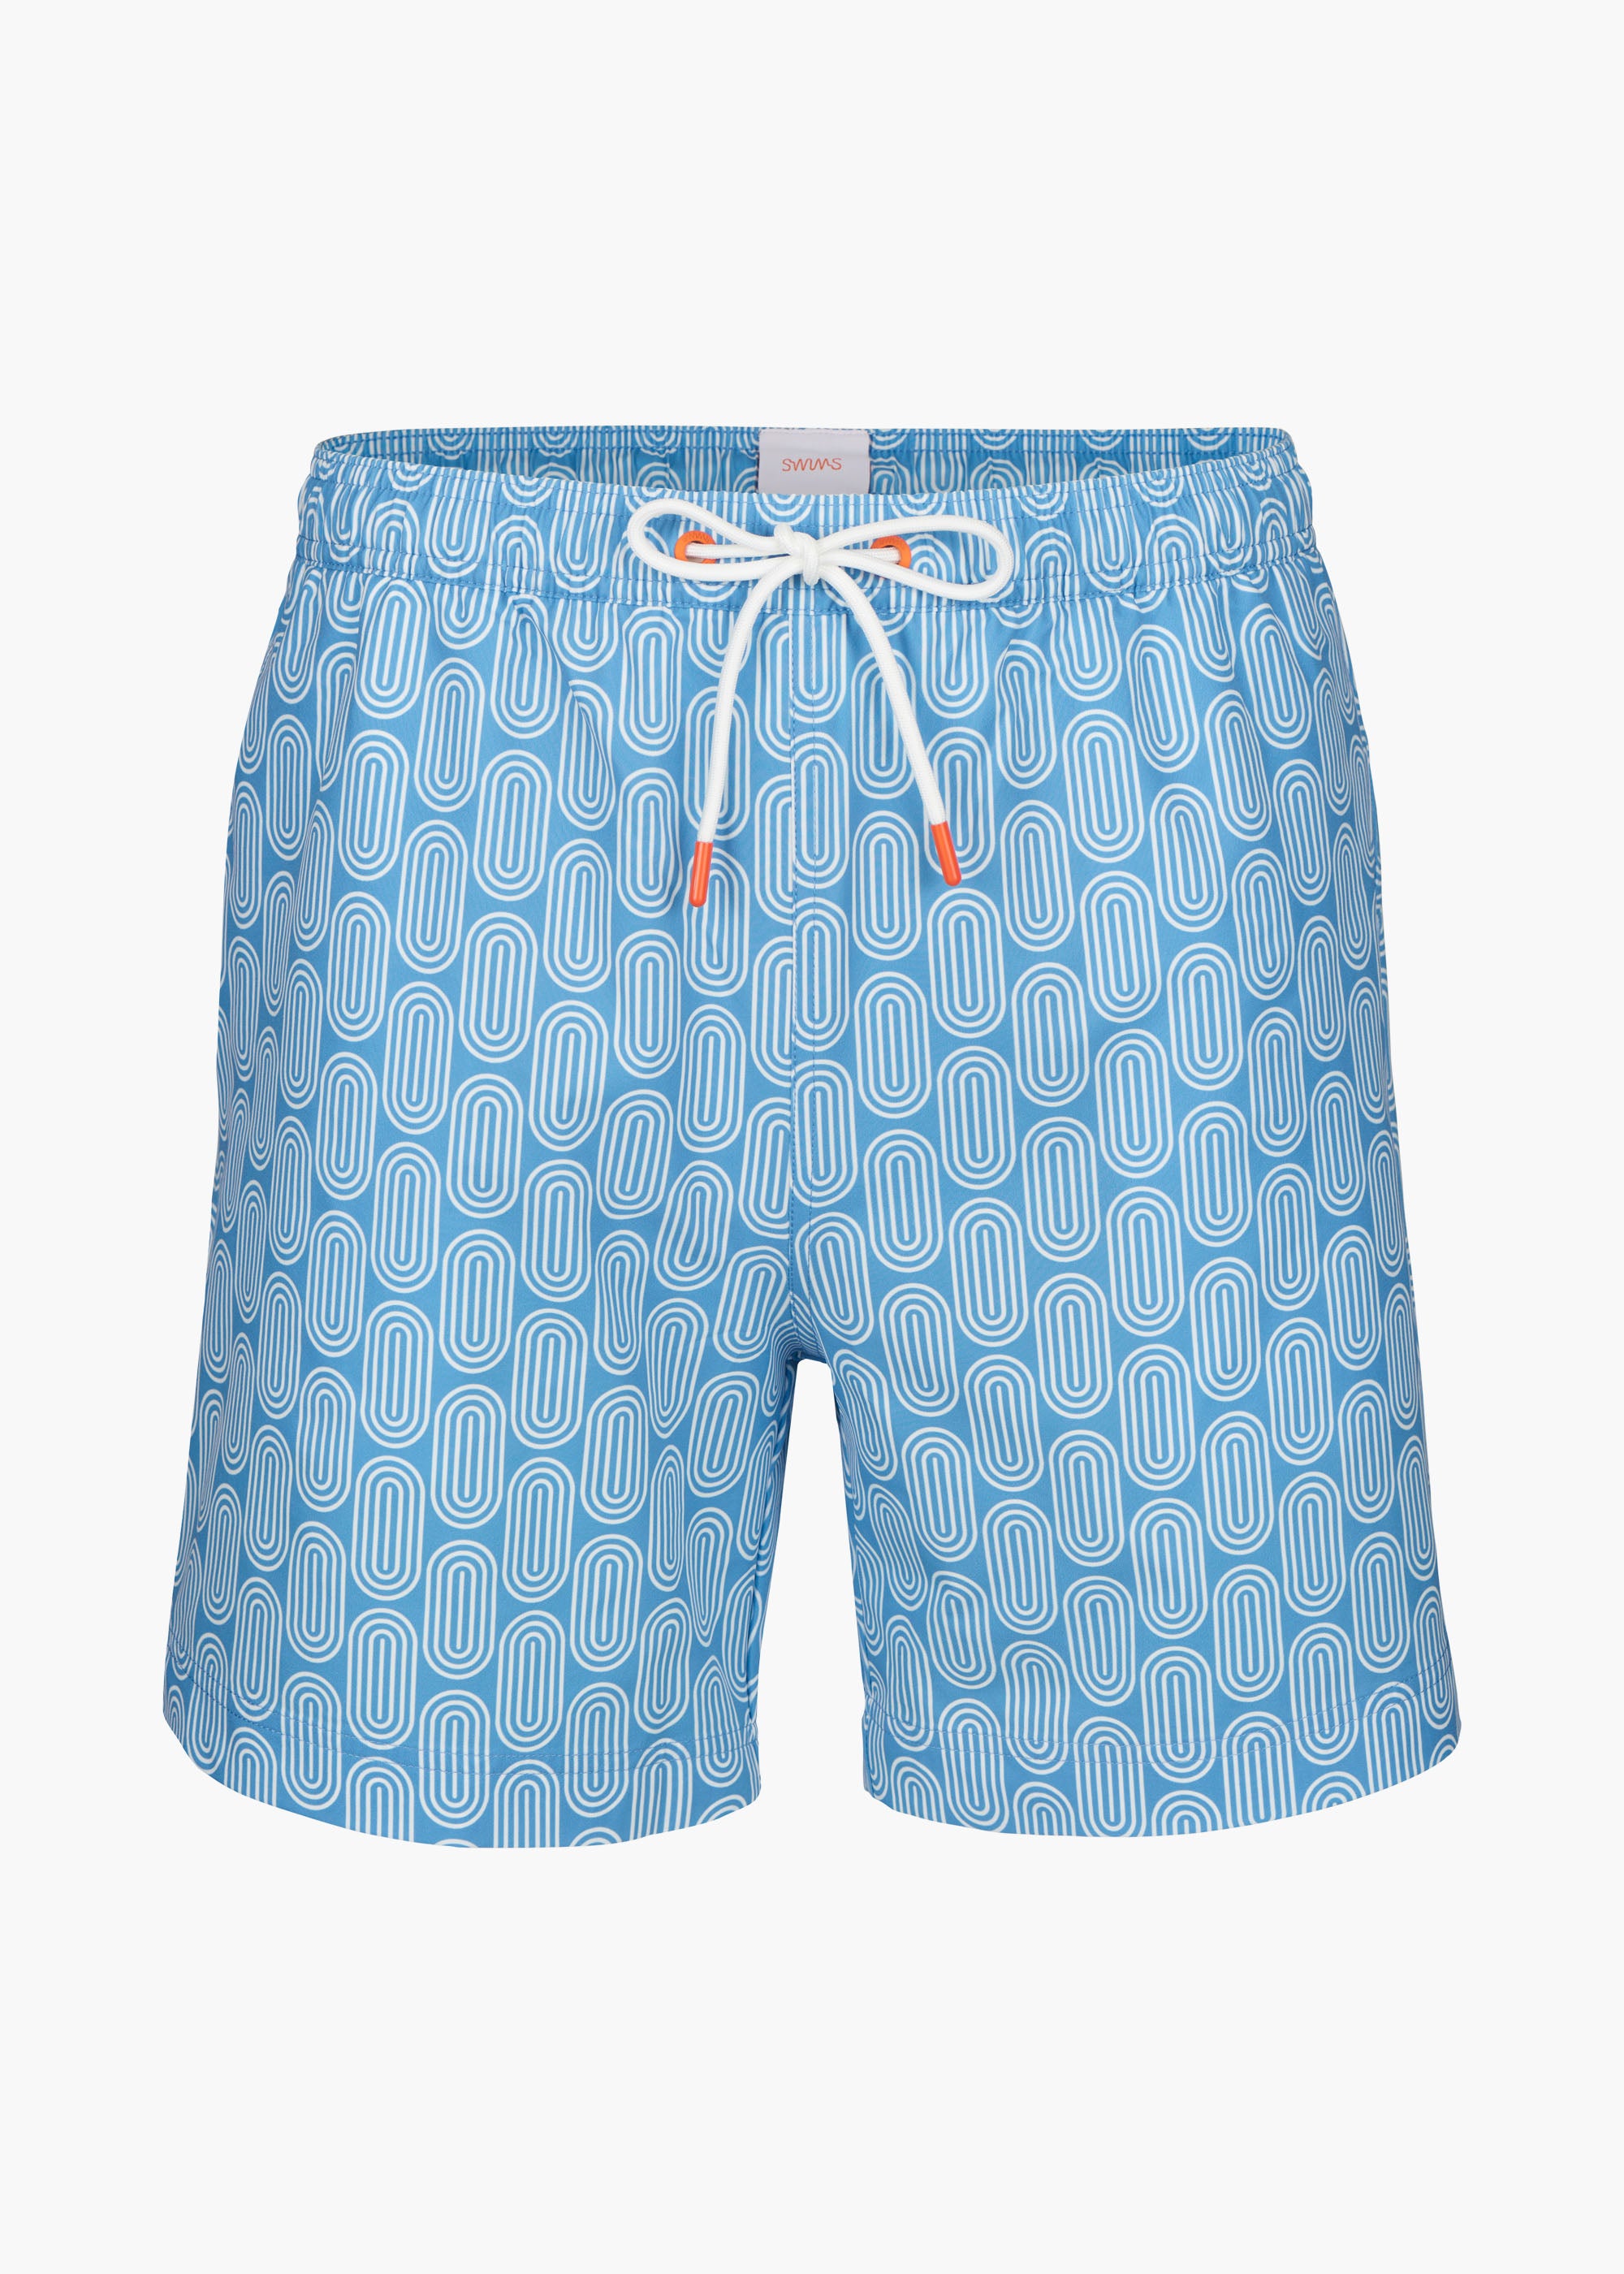 Sol Swim Short (6 ½” Inseam) - background::white,variant::Gia Aegean Blue